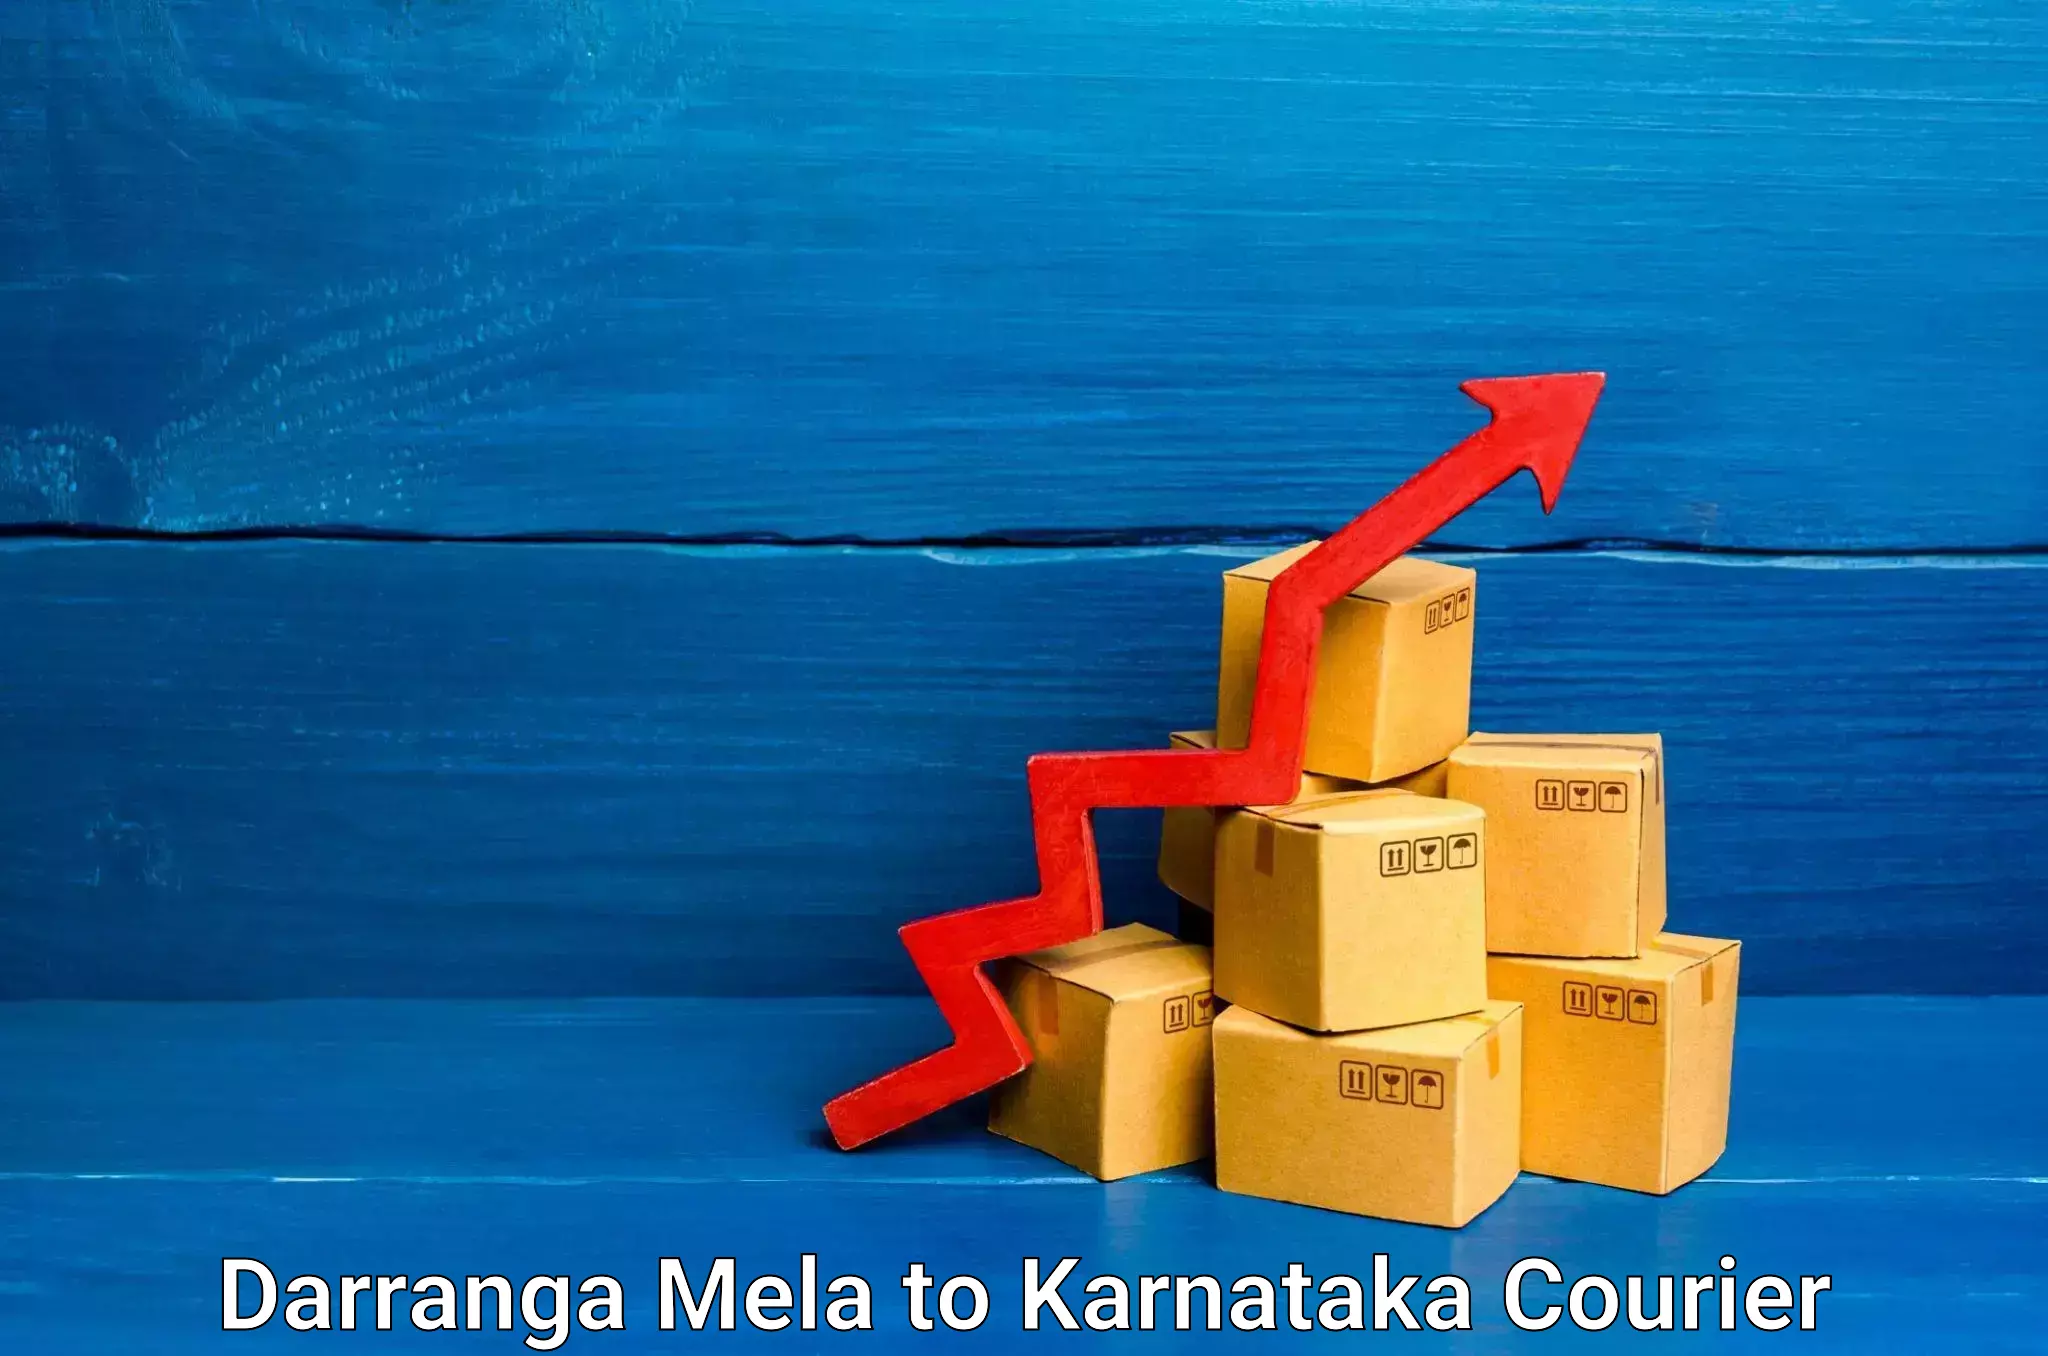 Optimized shipping services Darranga Mela to Bangalore